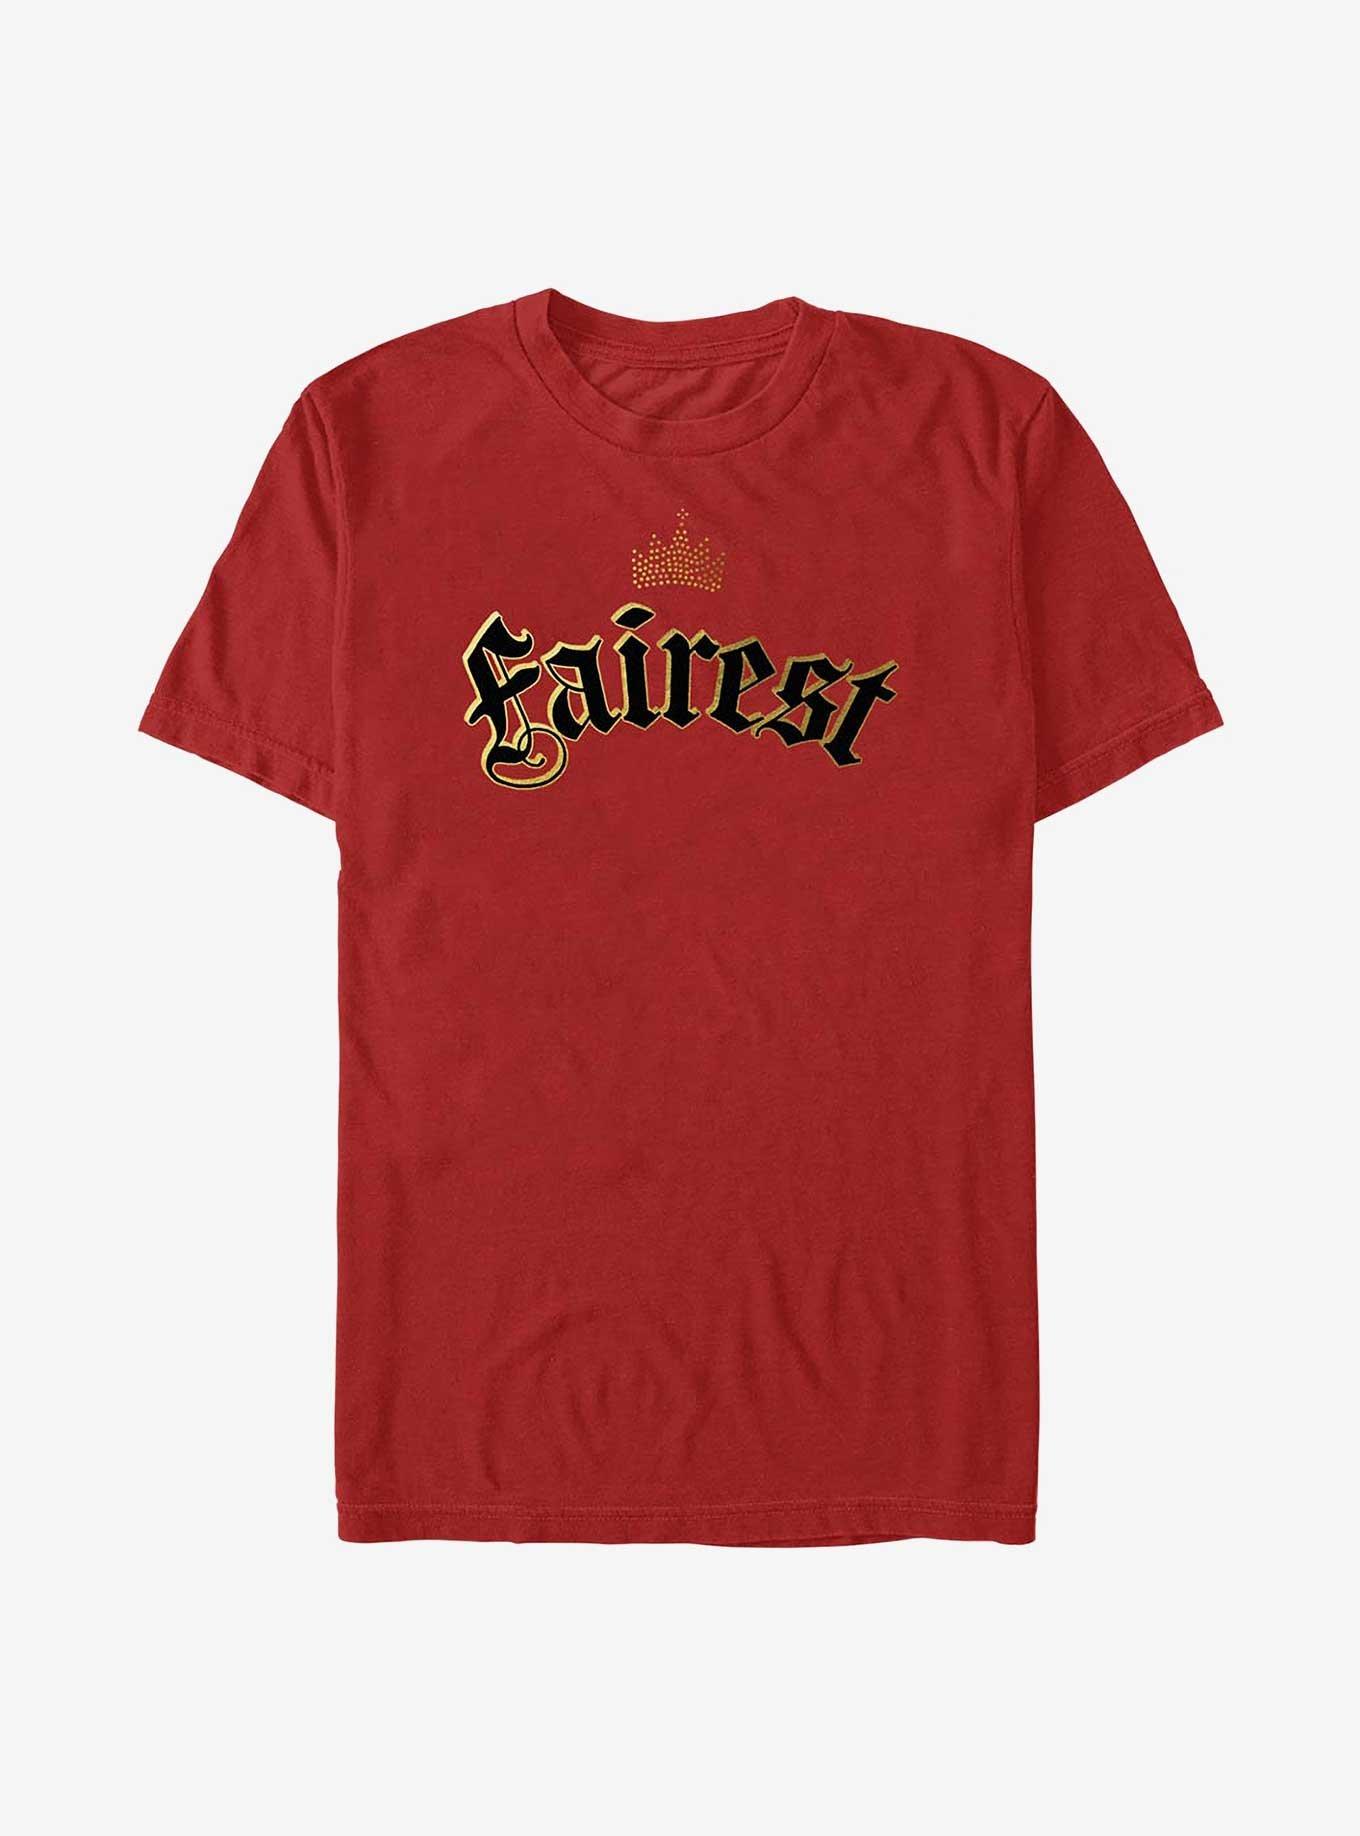 Disney Descendants Fairest T-Shirt